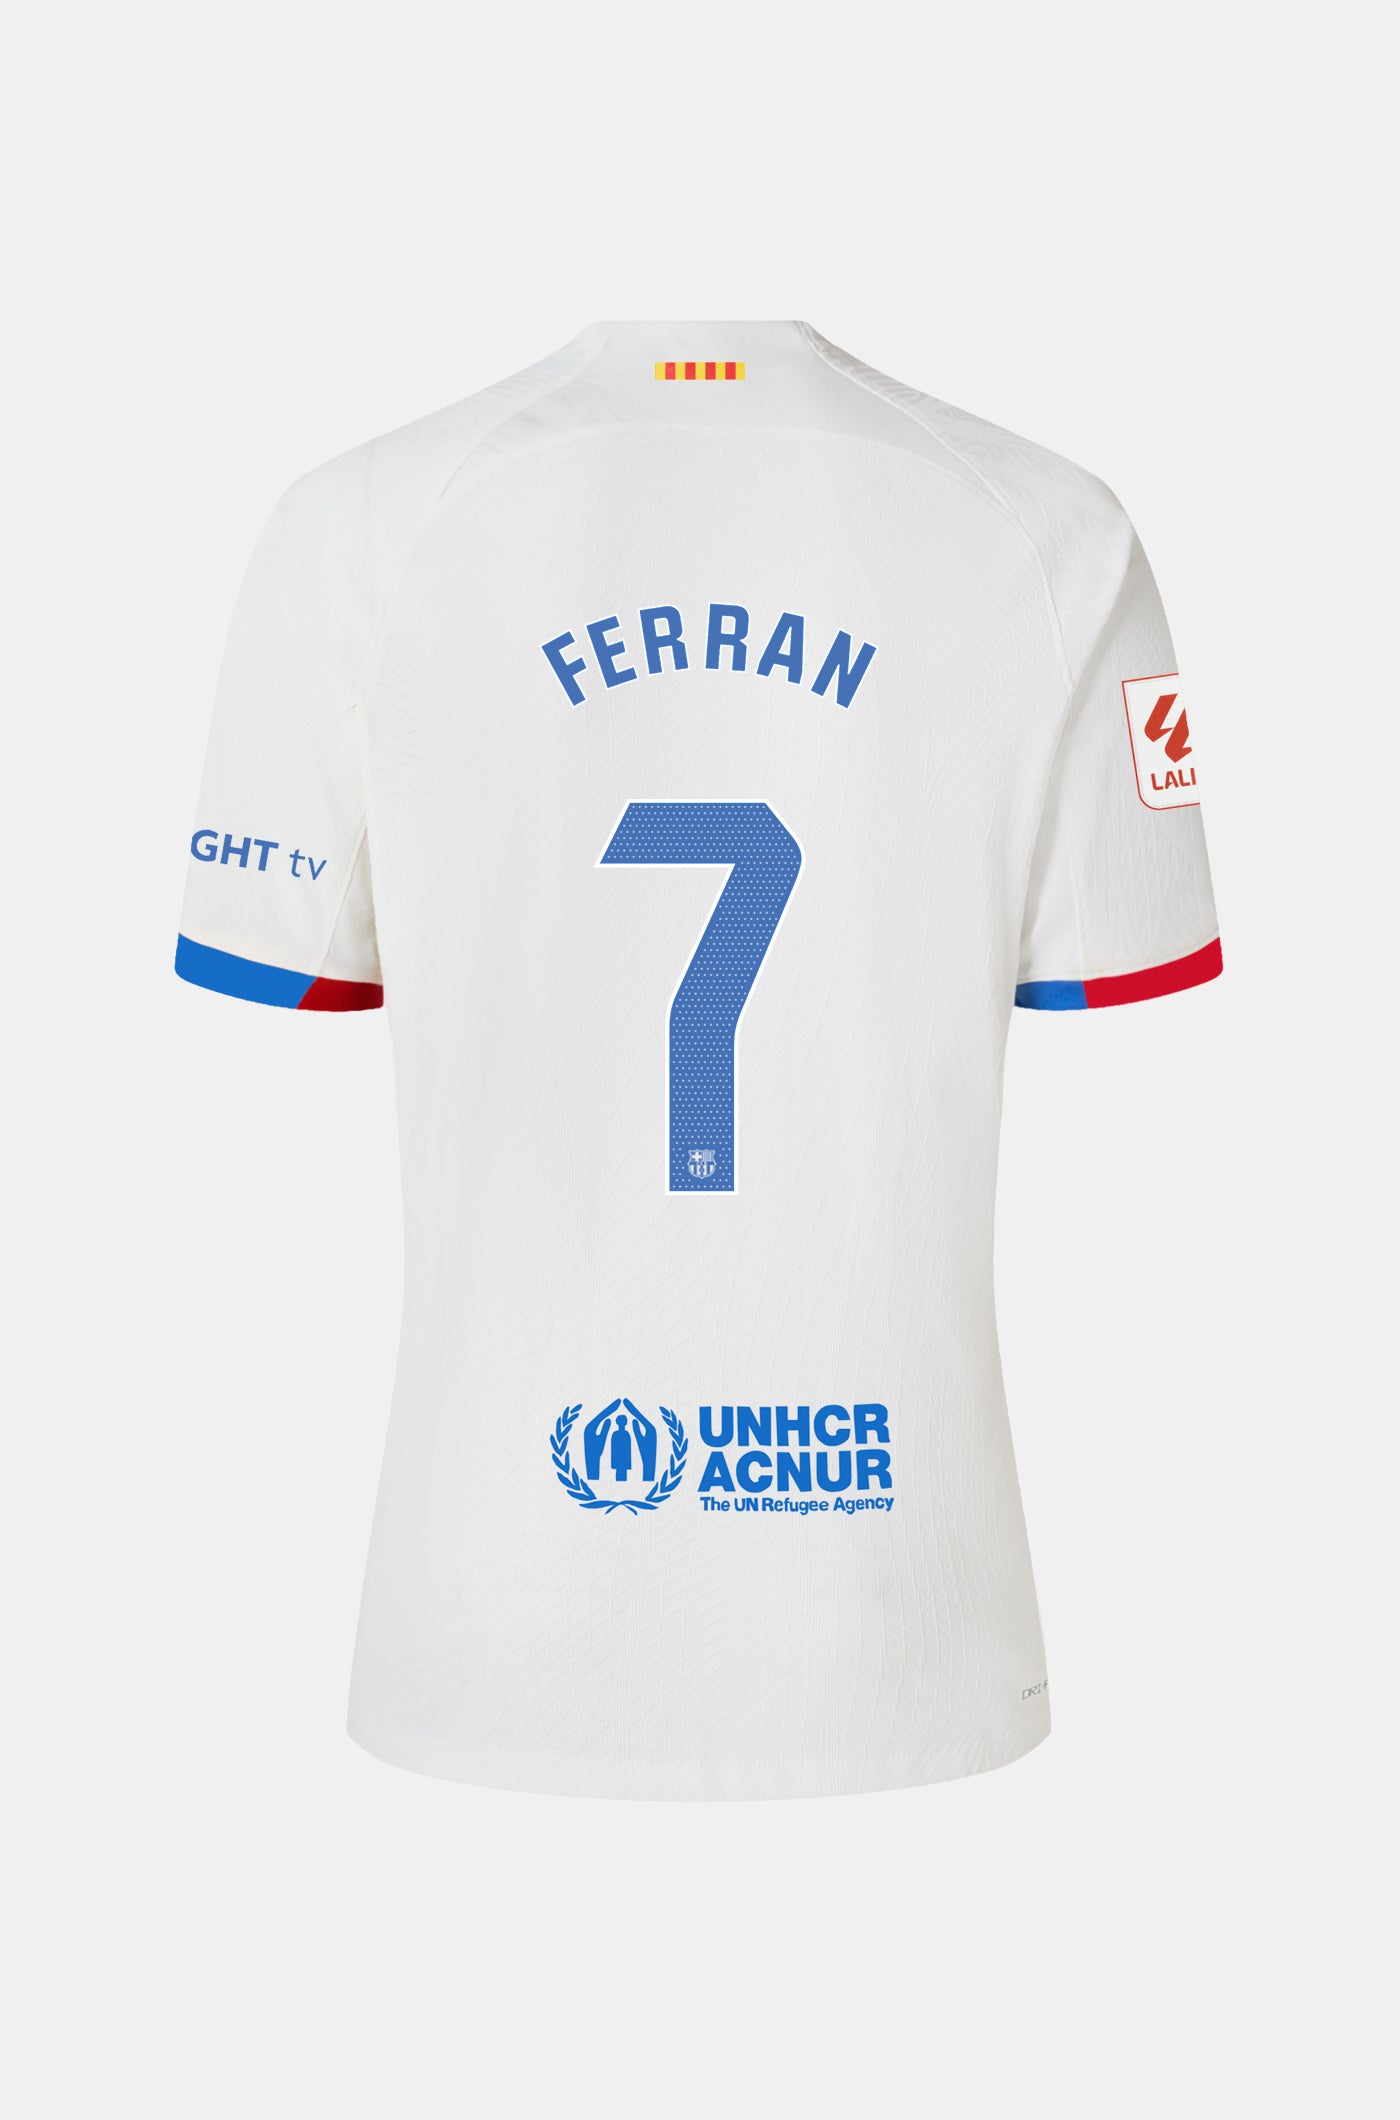 LFP FC Barcelona away shirt 23/24  - FERRAN